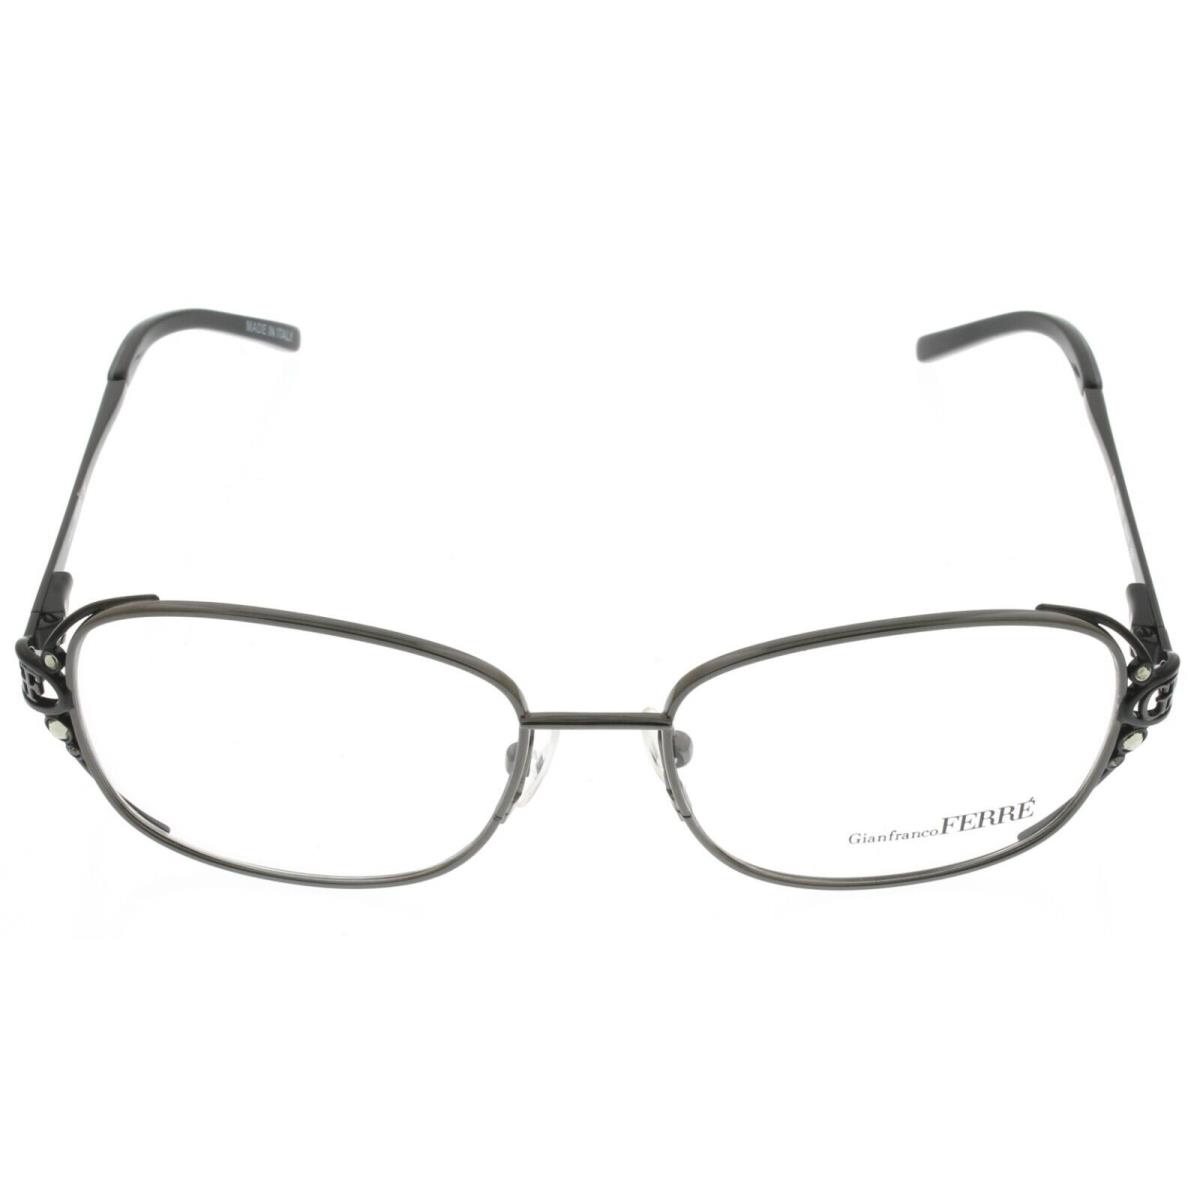 Gianfranco Ferre Eyeglasses Frame Women Black Rectangular GF376 03